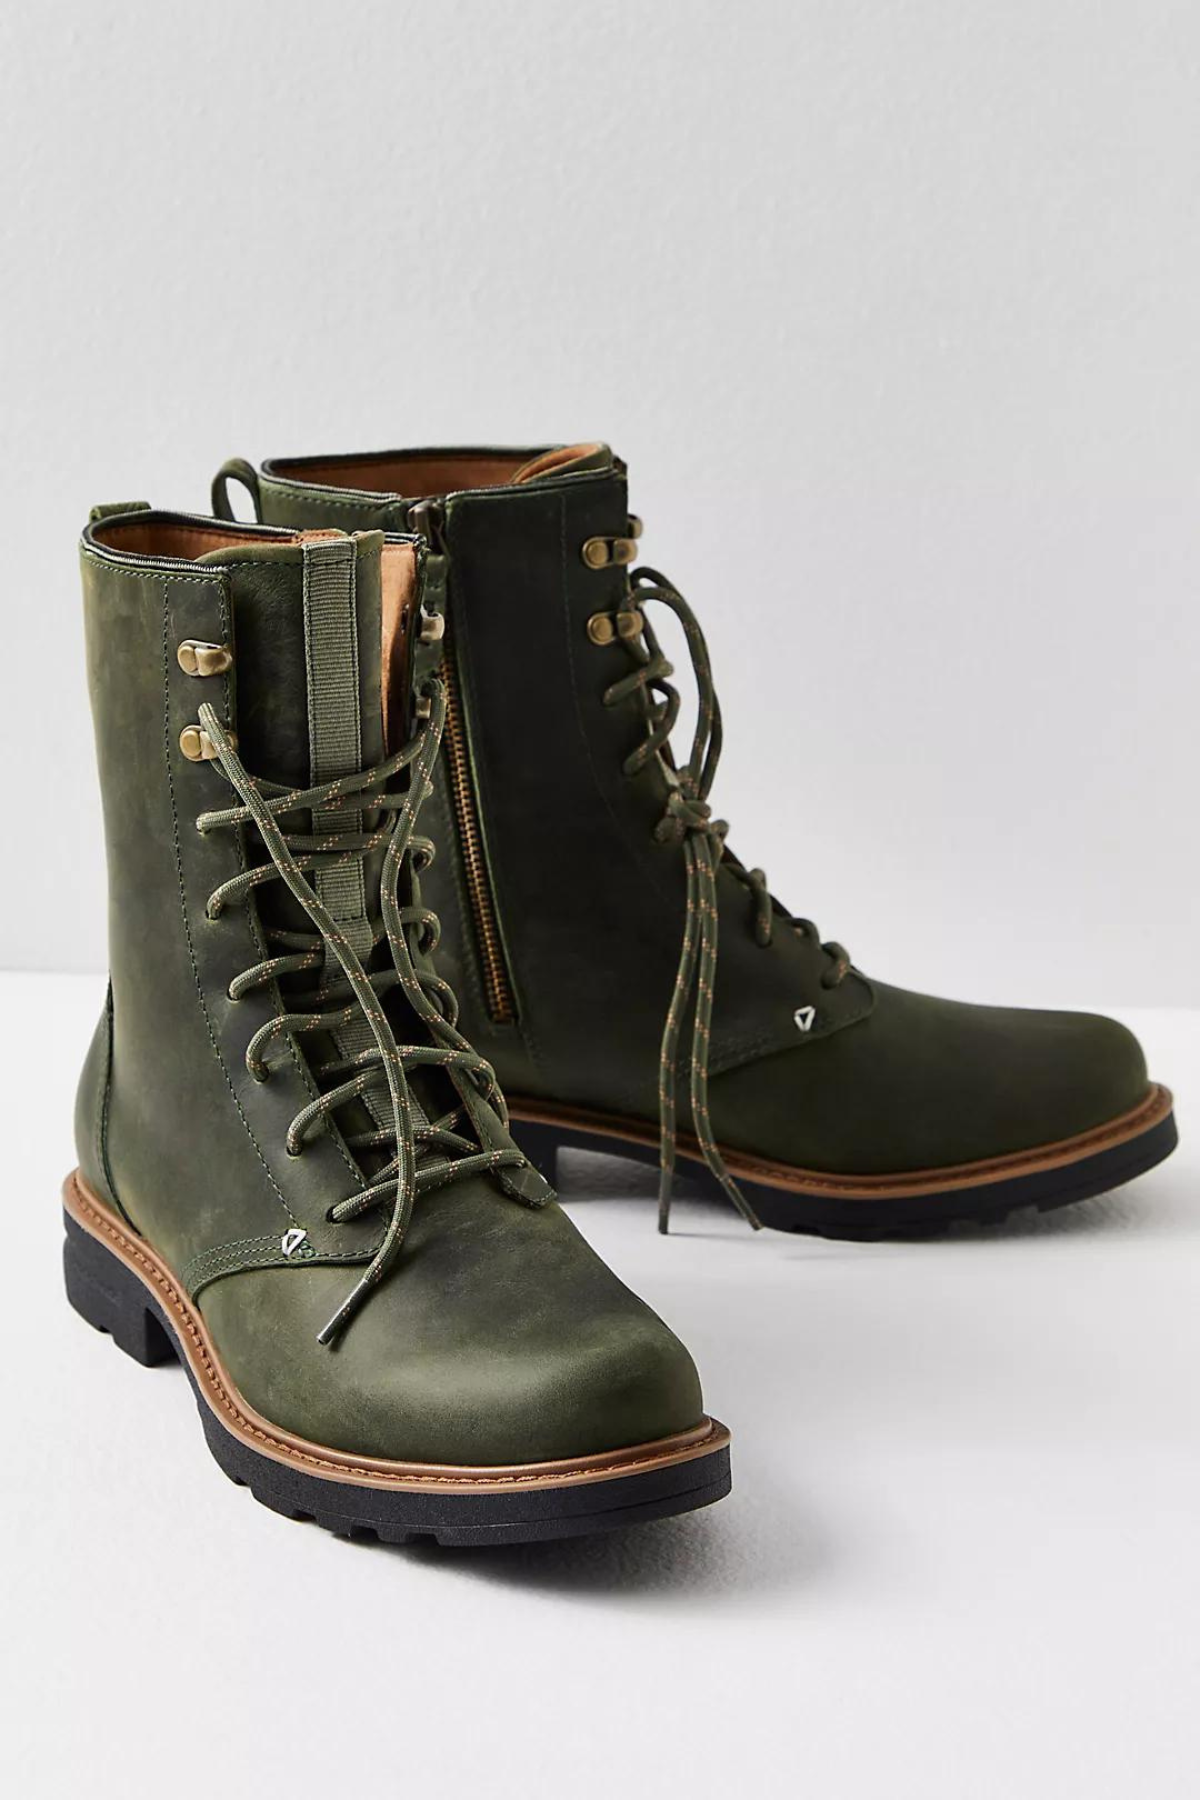 green combat boots